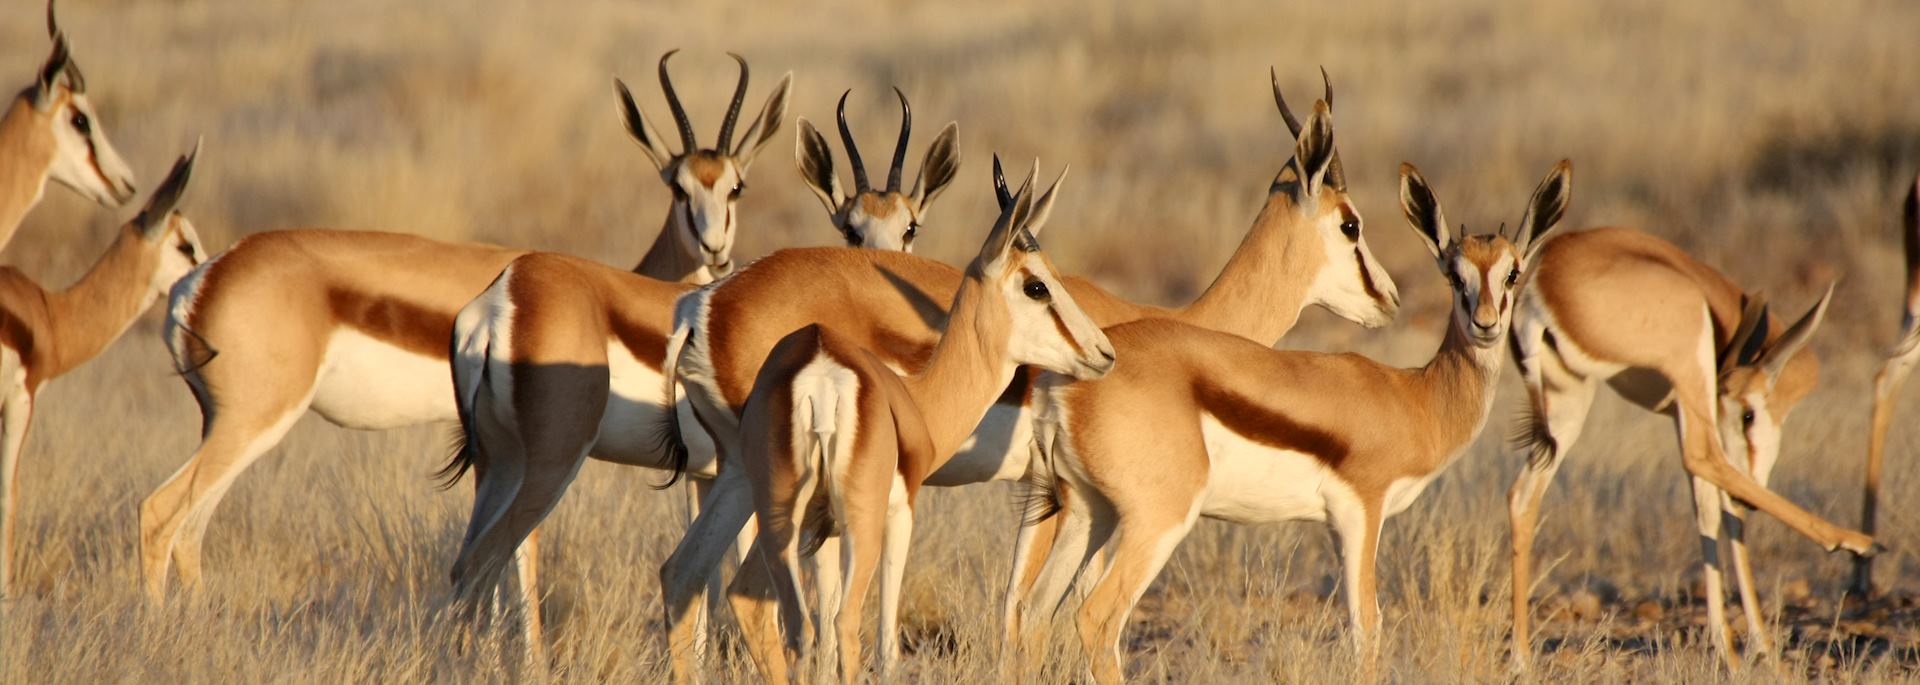 Springbok family in Namibia